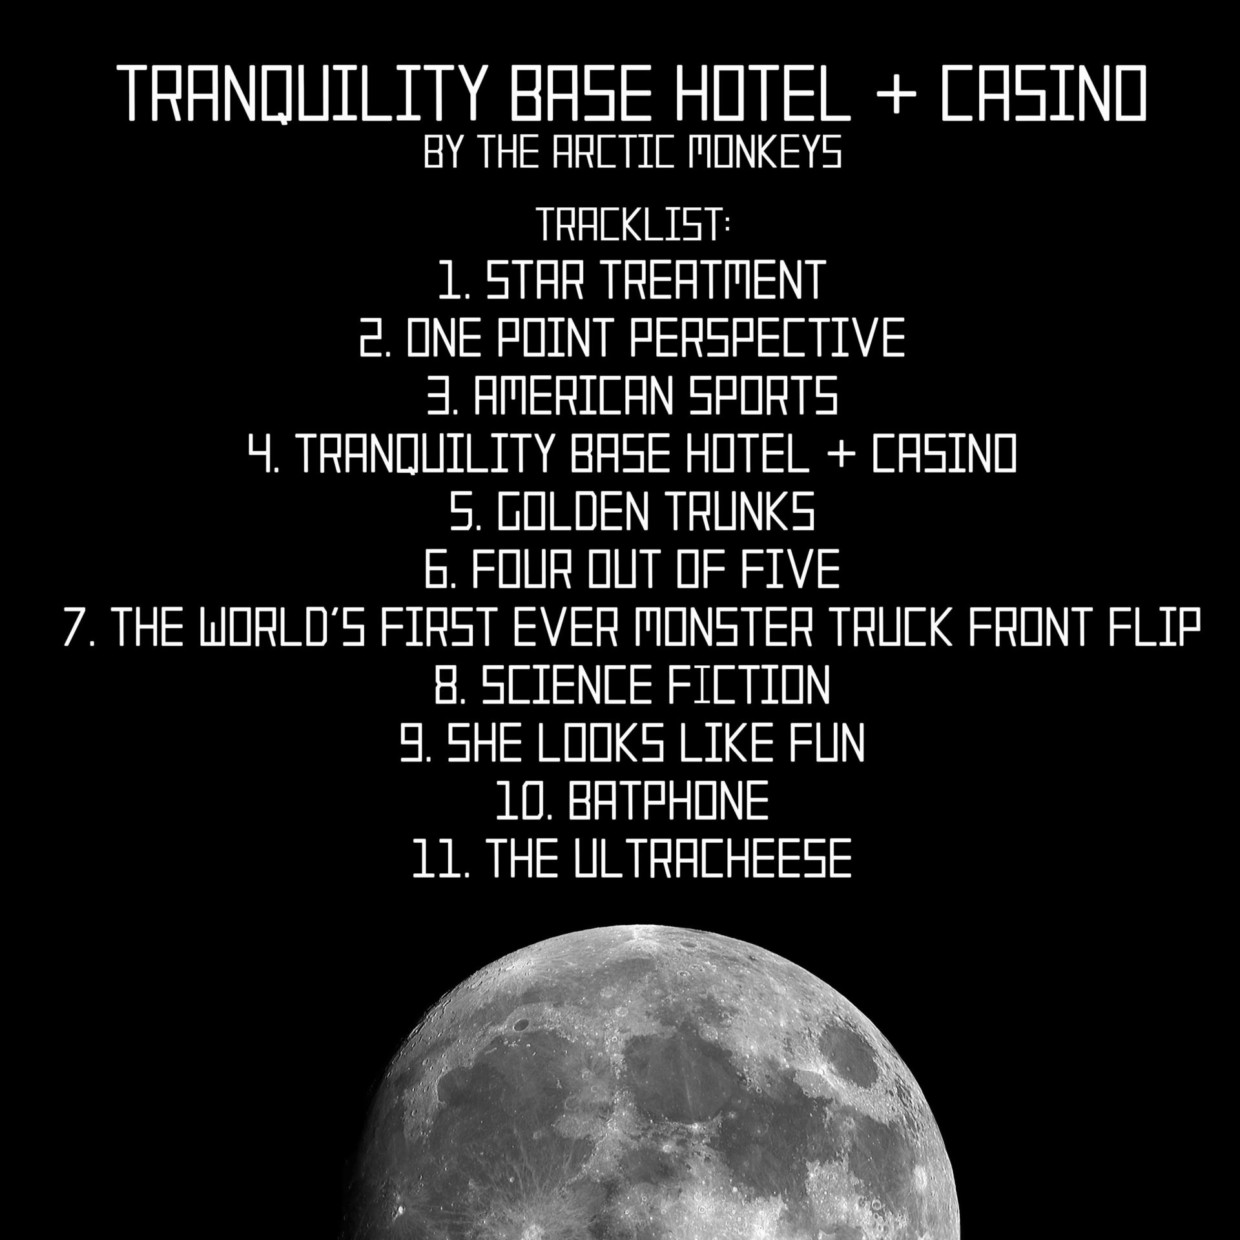 arctic tranquility base hotel casino lyrics